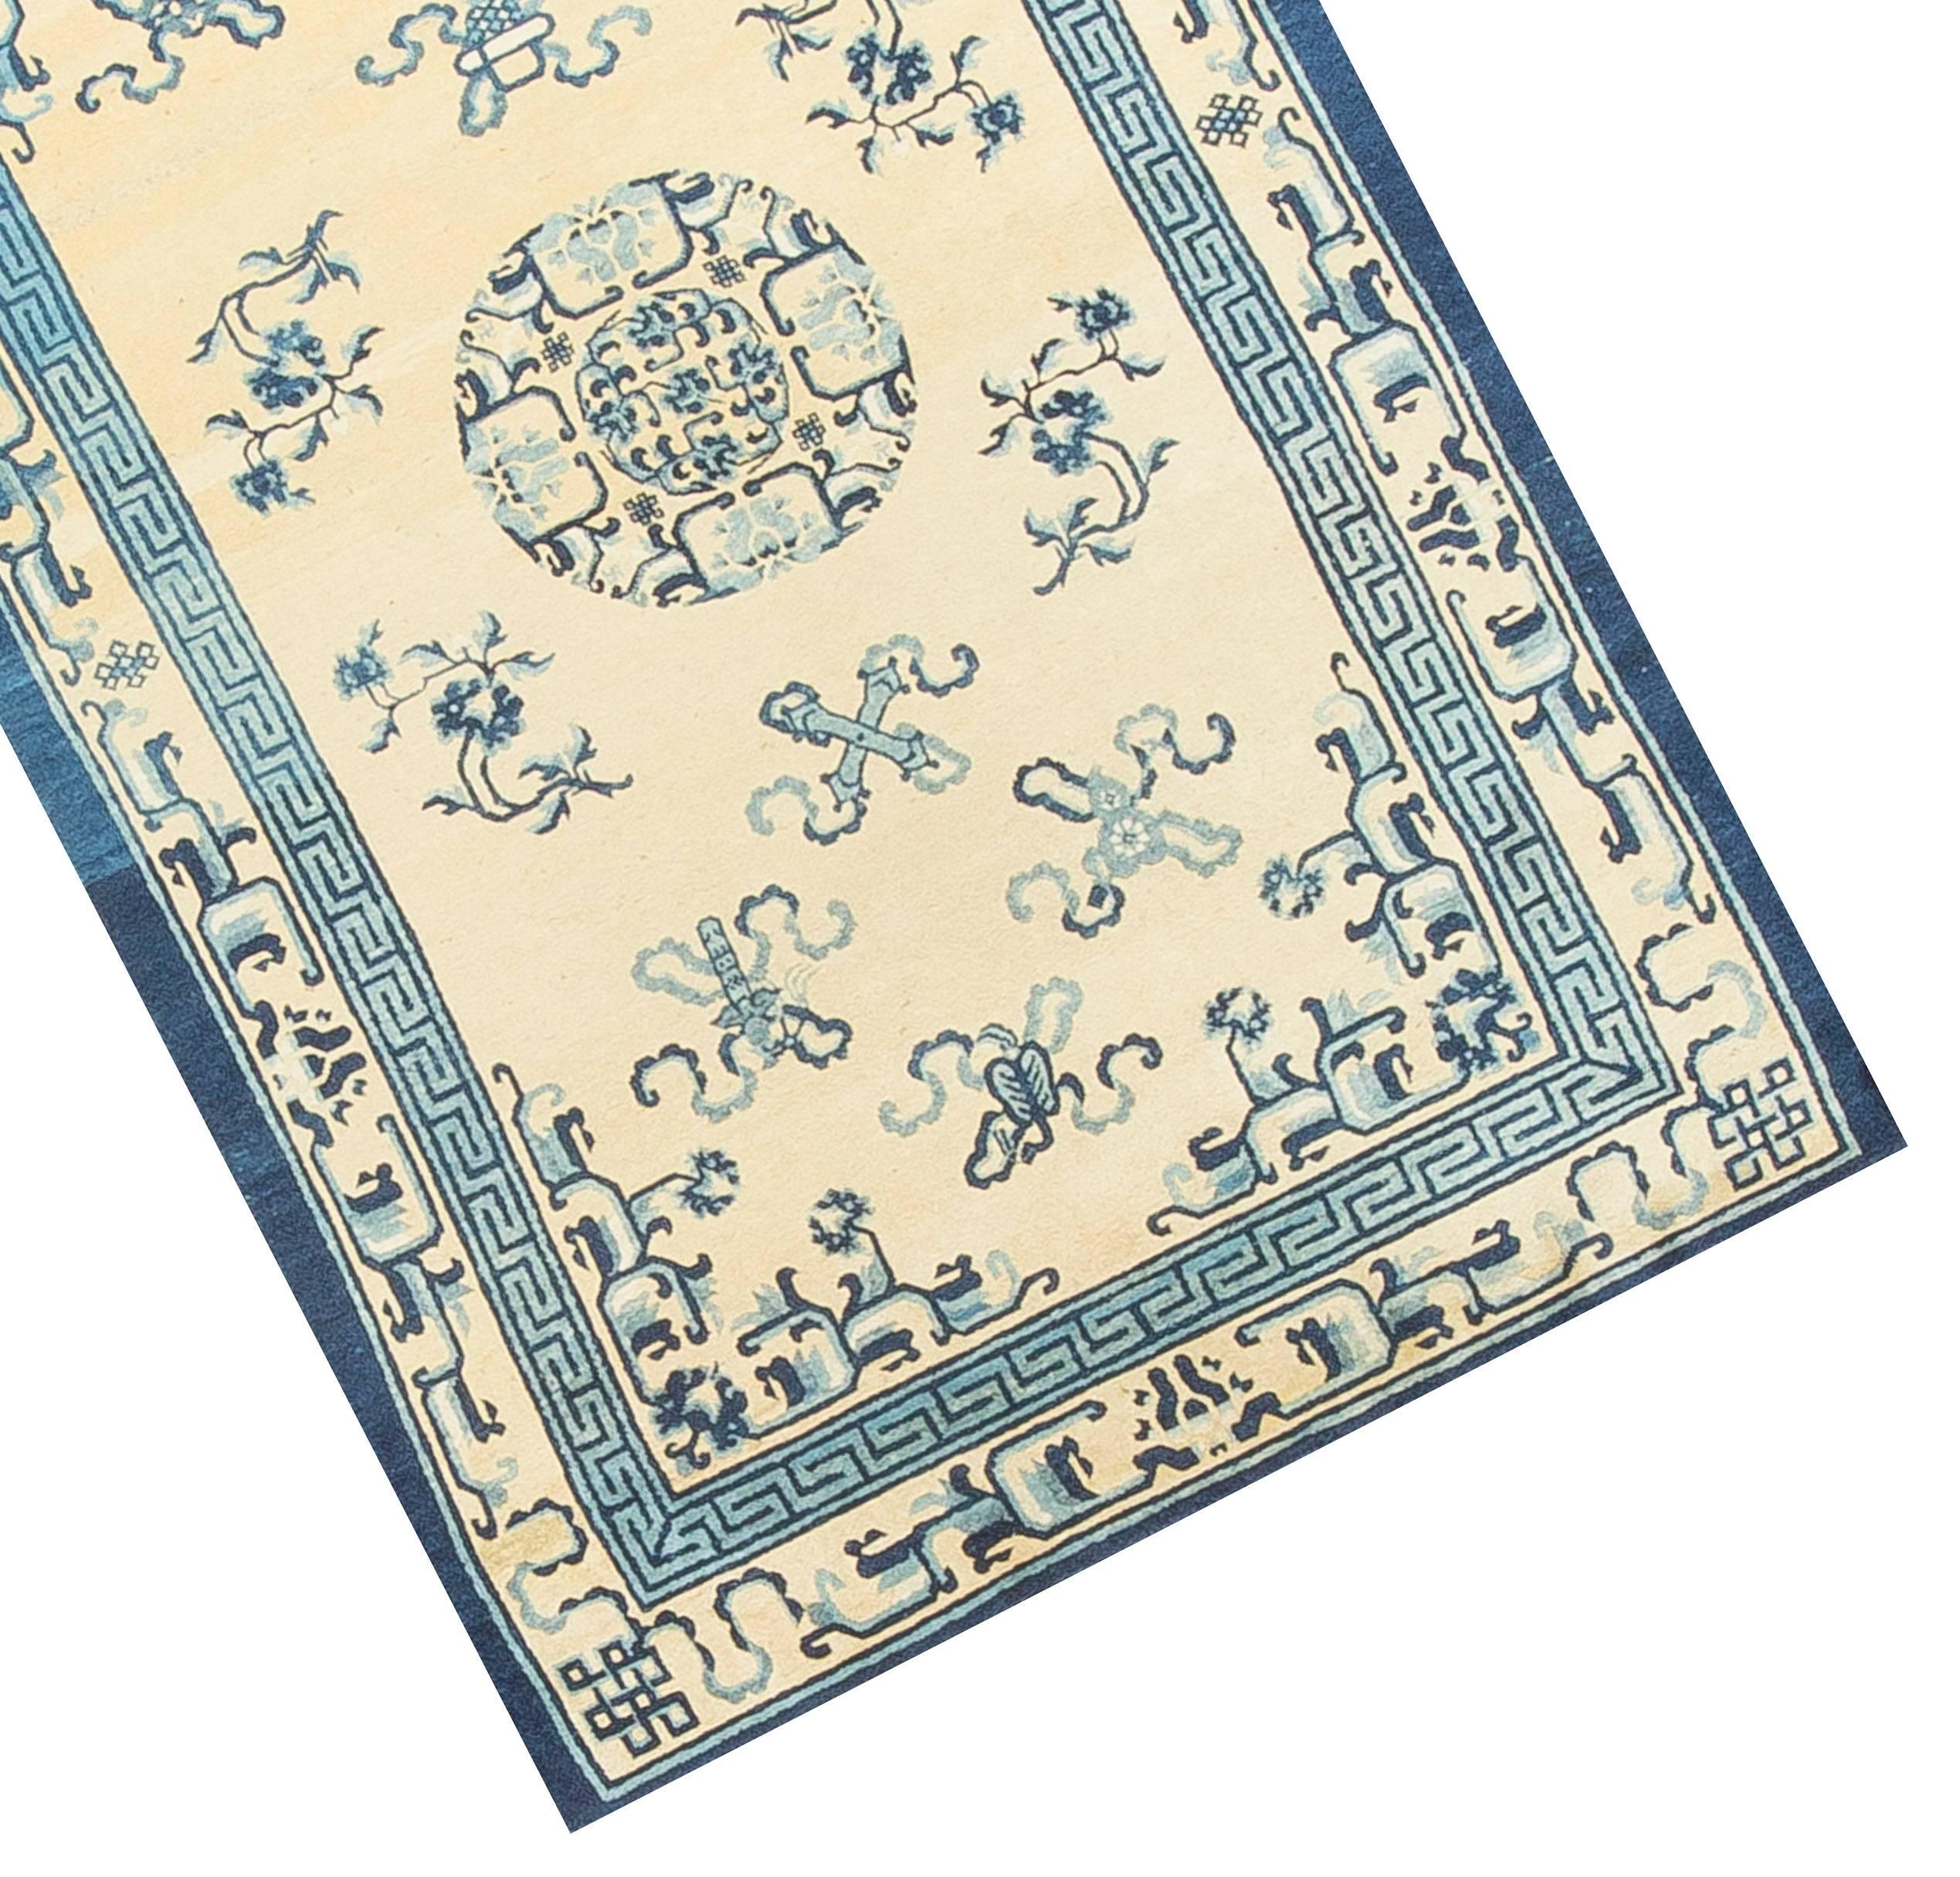 Le tissage à Pékin a commencé vers 1900, lors de la renaissance de la fabrication de tapis chinois, lorsque les autres régions de tissage, comme le Ningxia, se sont déplacées vers la capitale. Les tapis pékinois sont généralement minimalistes, avec